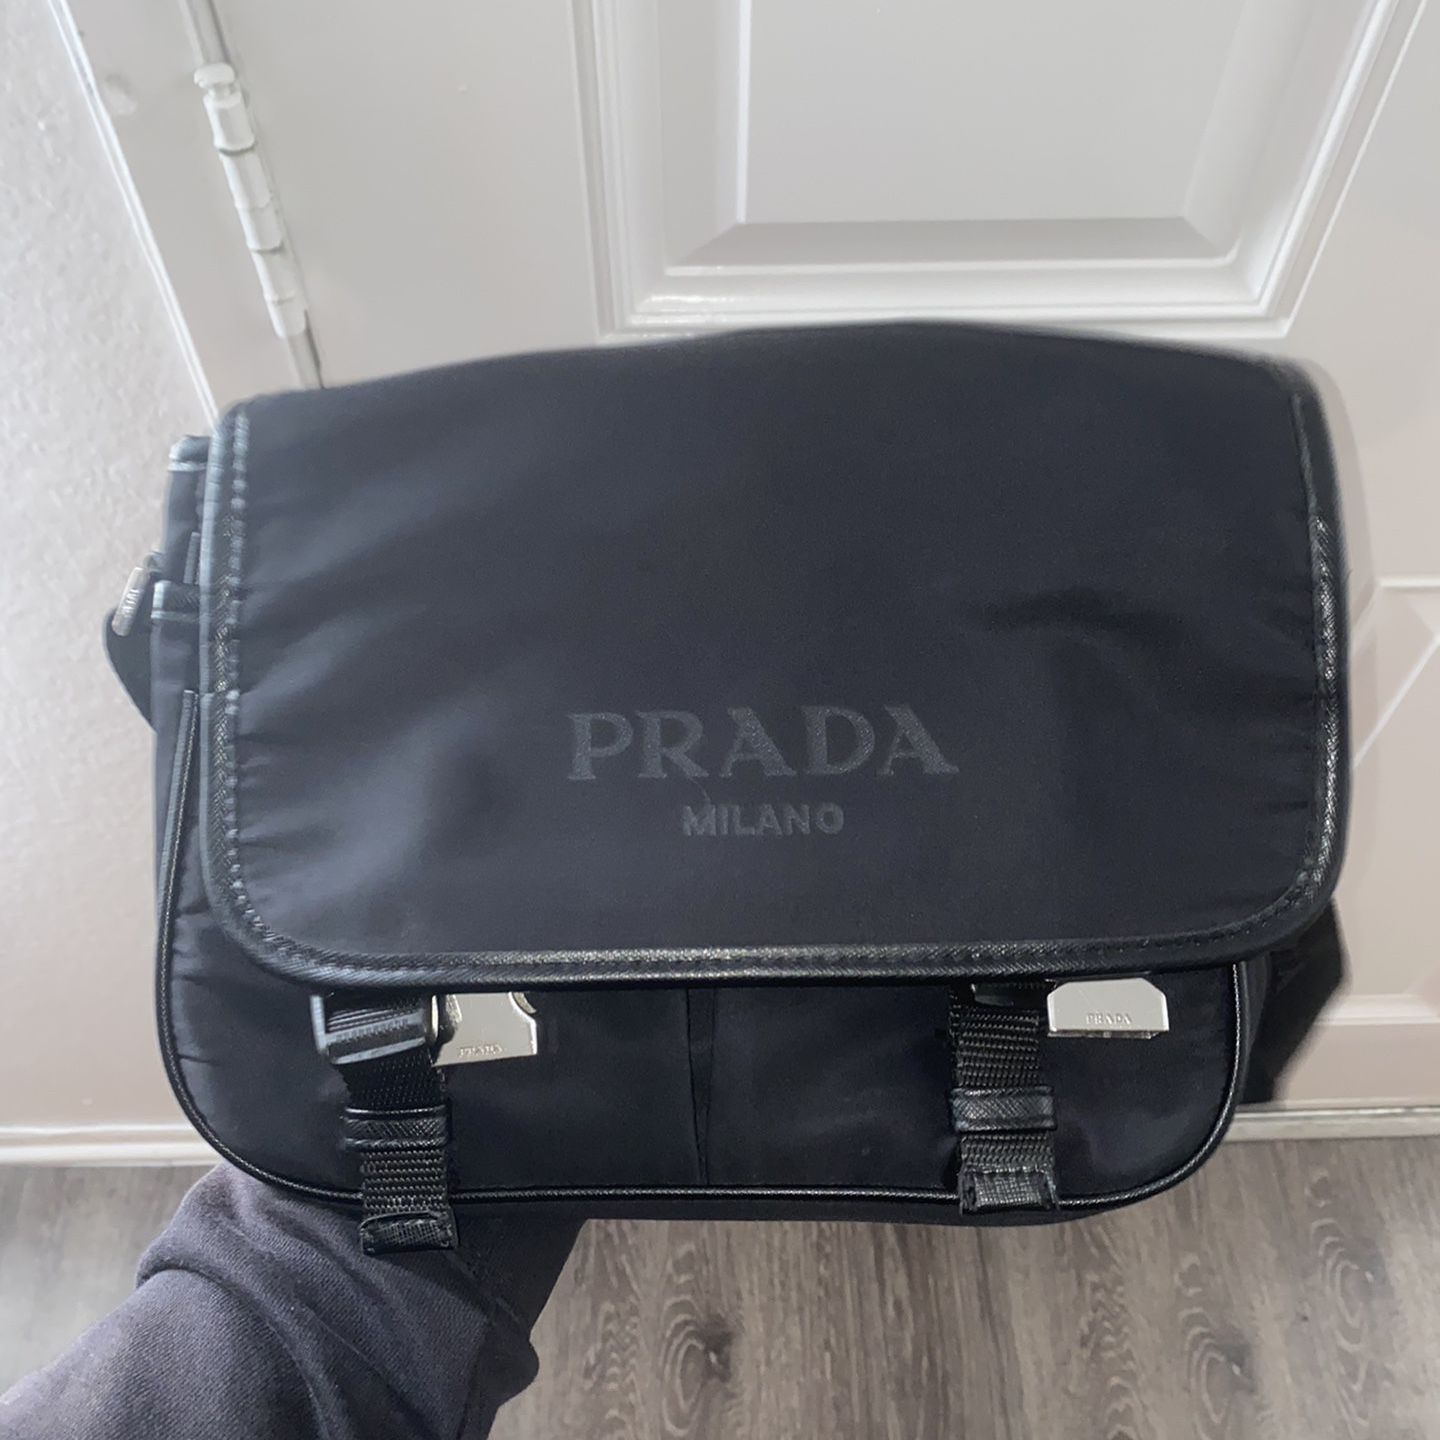 prada messenger bag